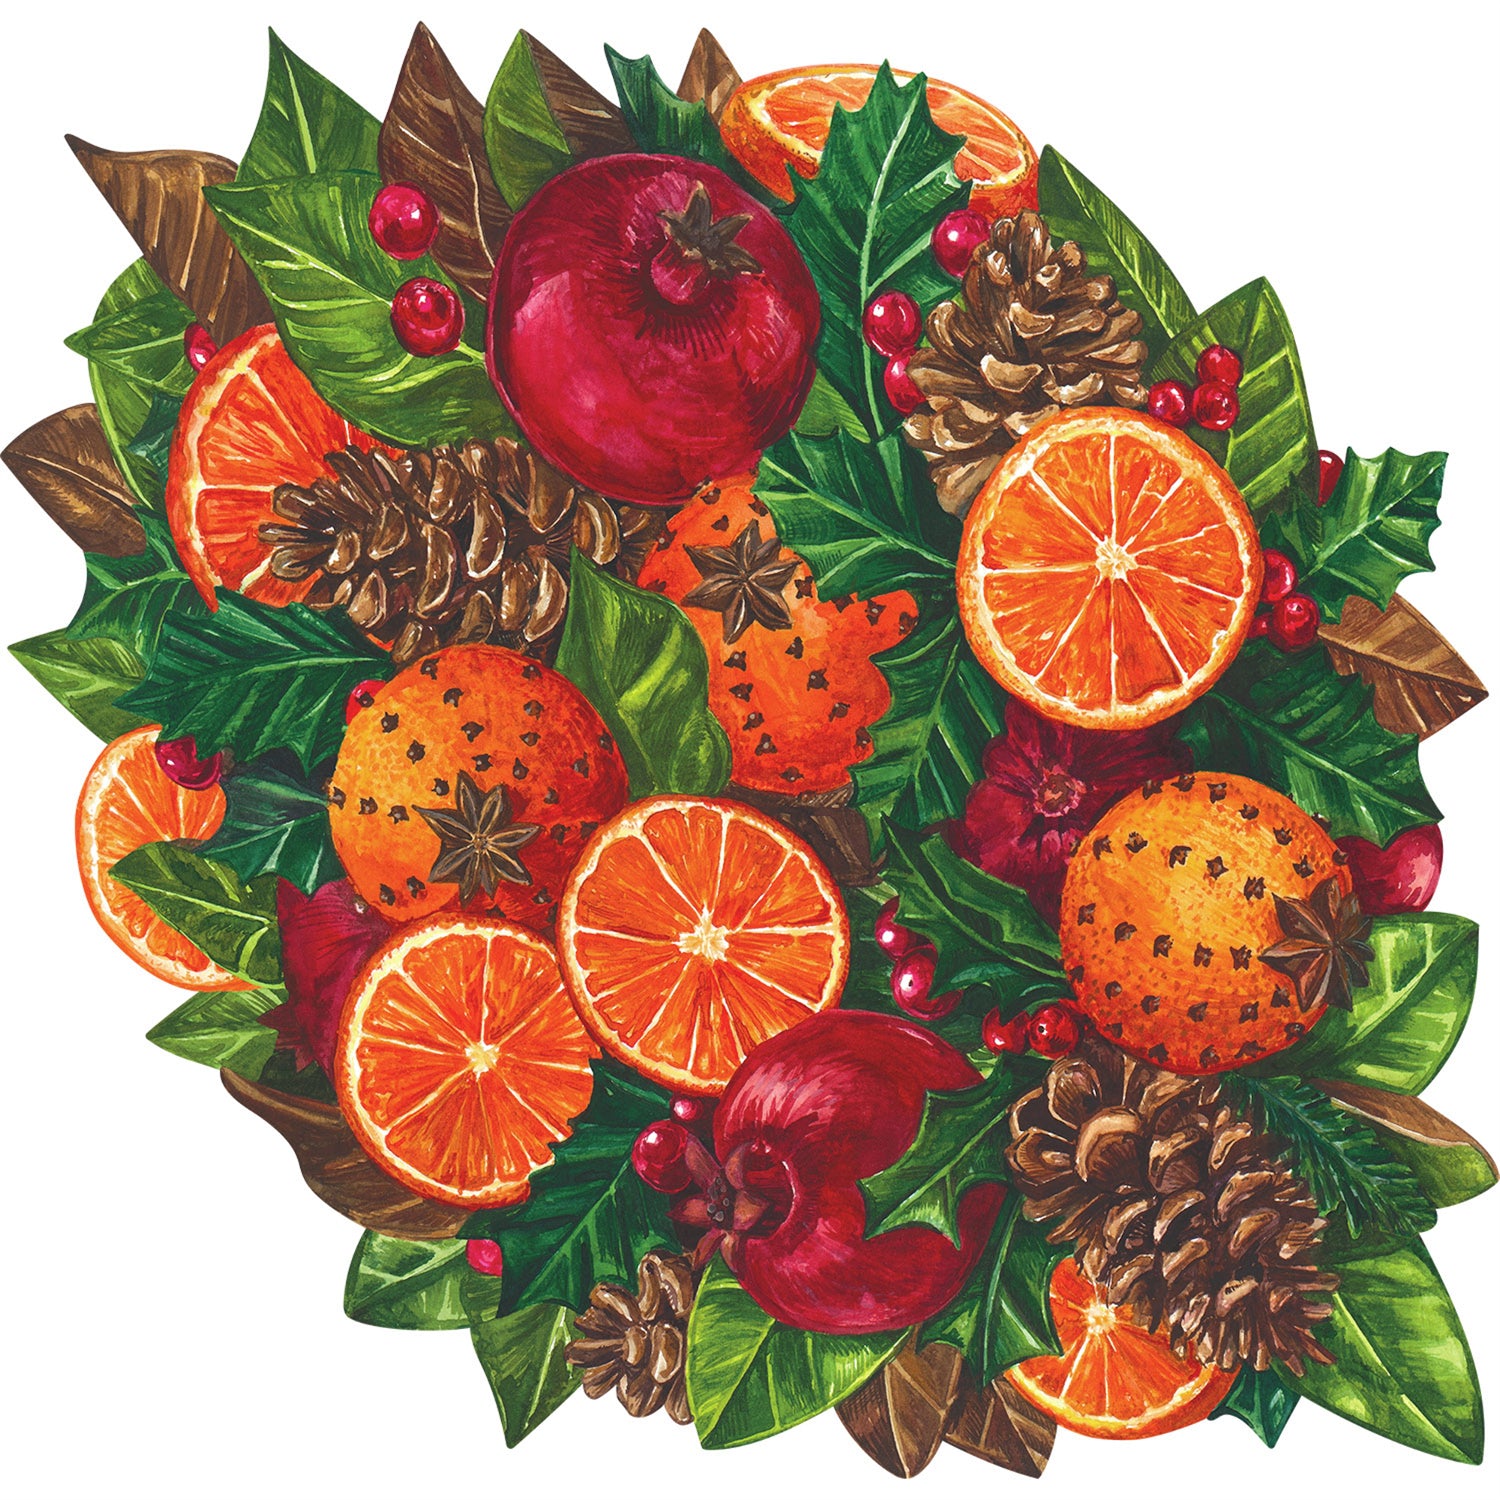 Die-cut Winter Citrus Placemat